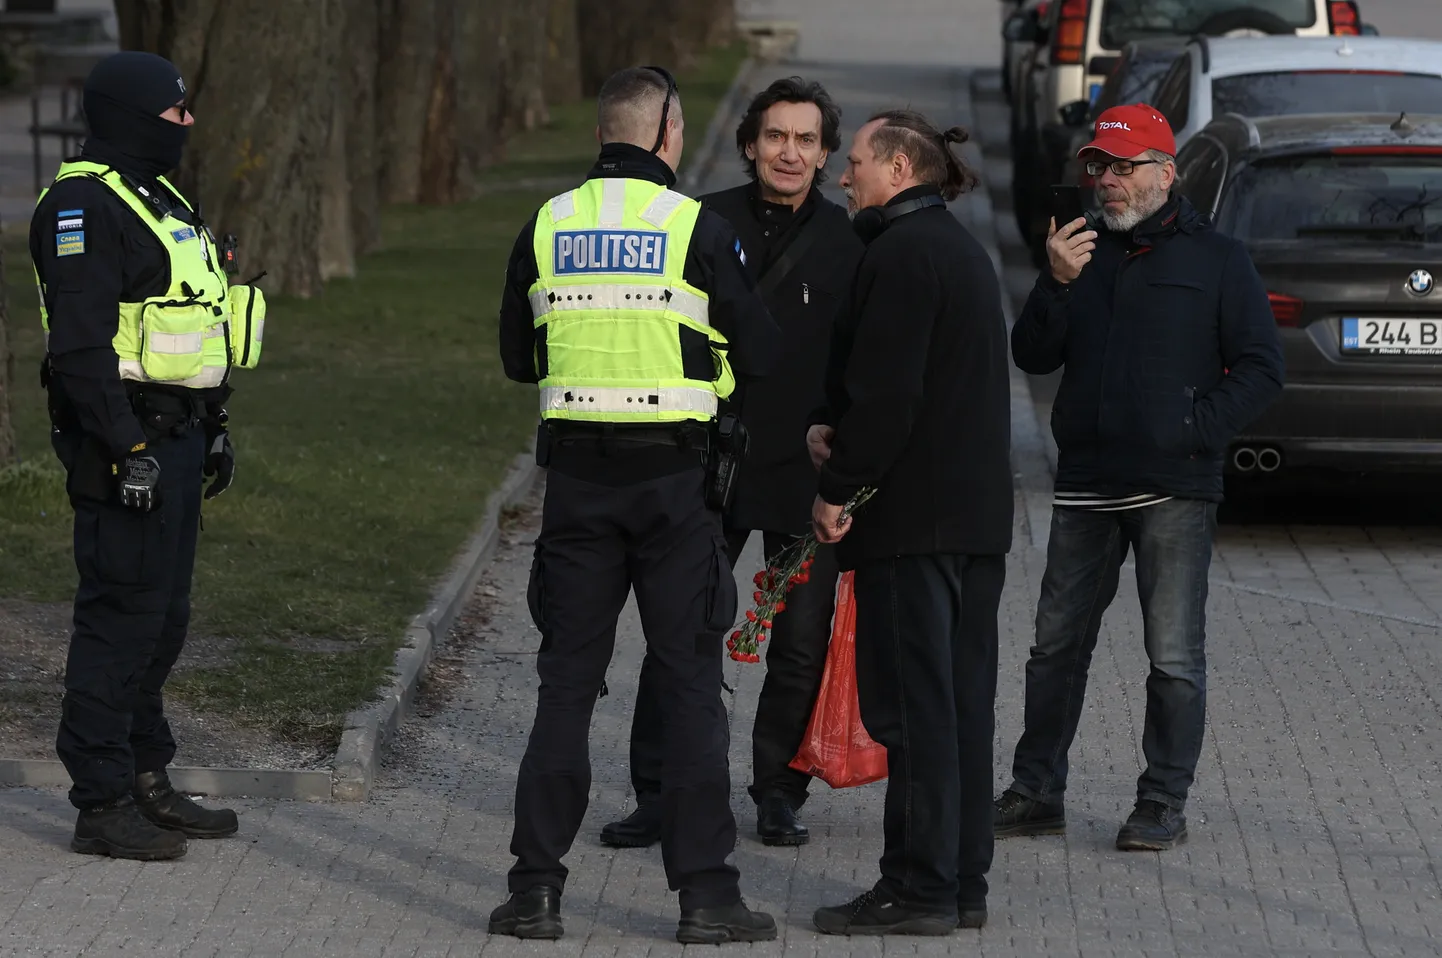 Активисты бывшего «Ночного дозора» Сергей Тыдыяков (в центре) и Сергей Чаулин (с цветами) беседуют с полицией на Тынисмяги.